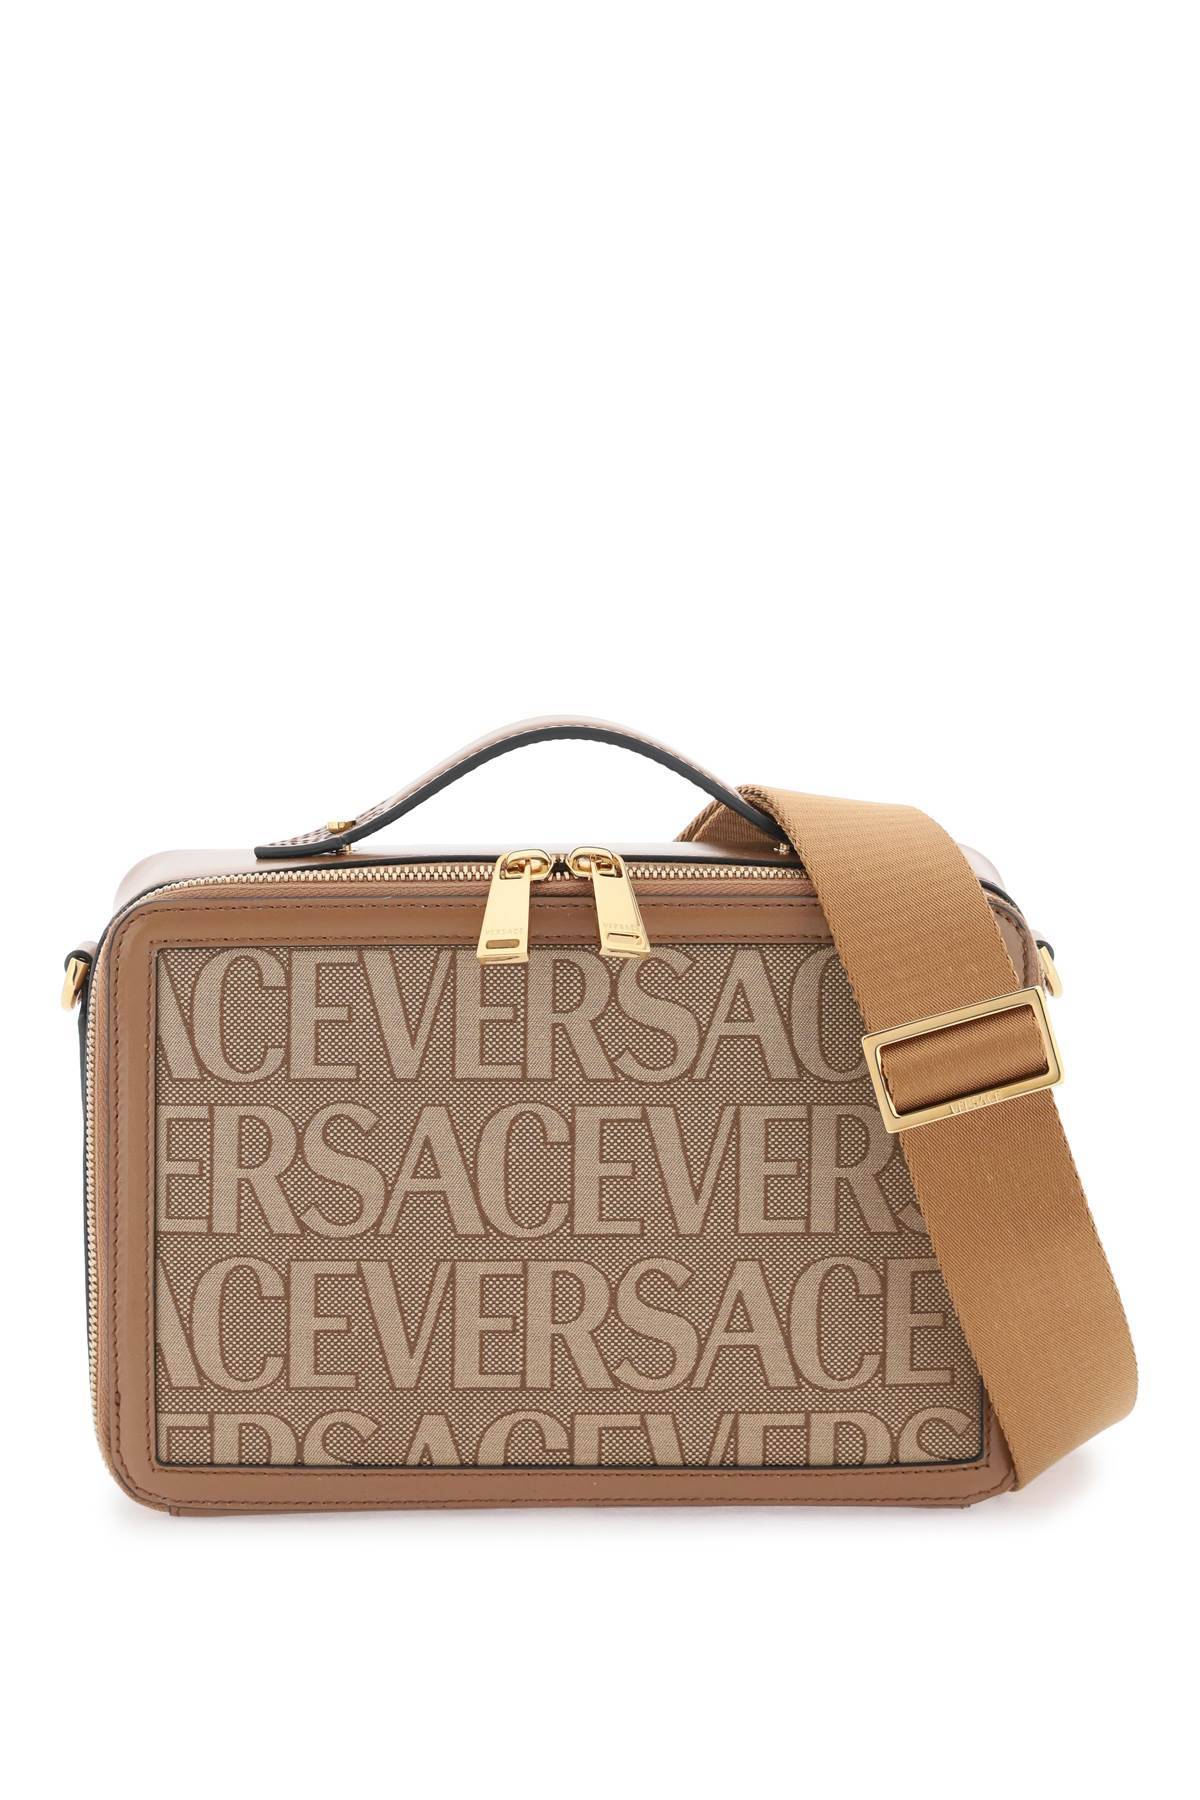 Versace VERSACE versace allover messenger bag